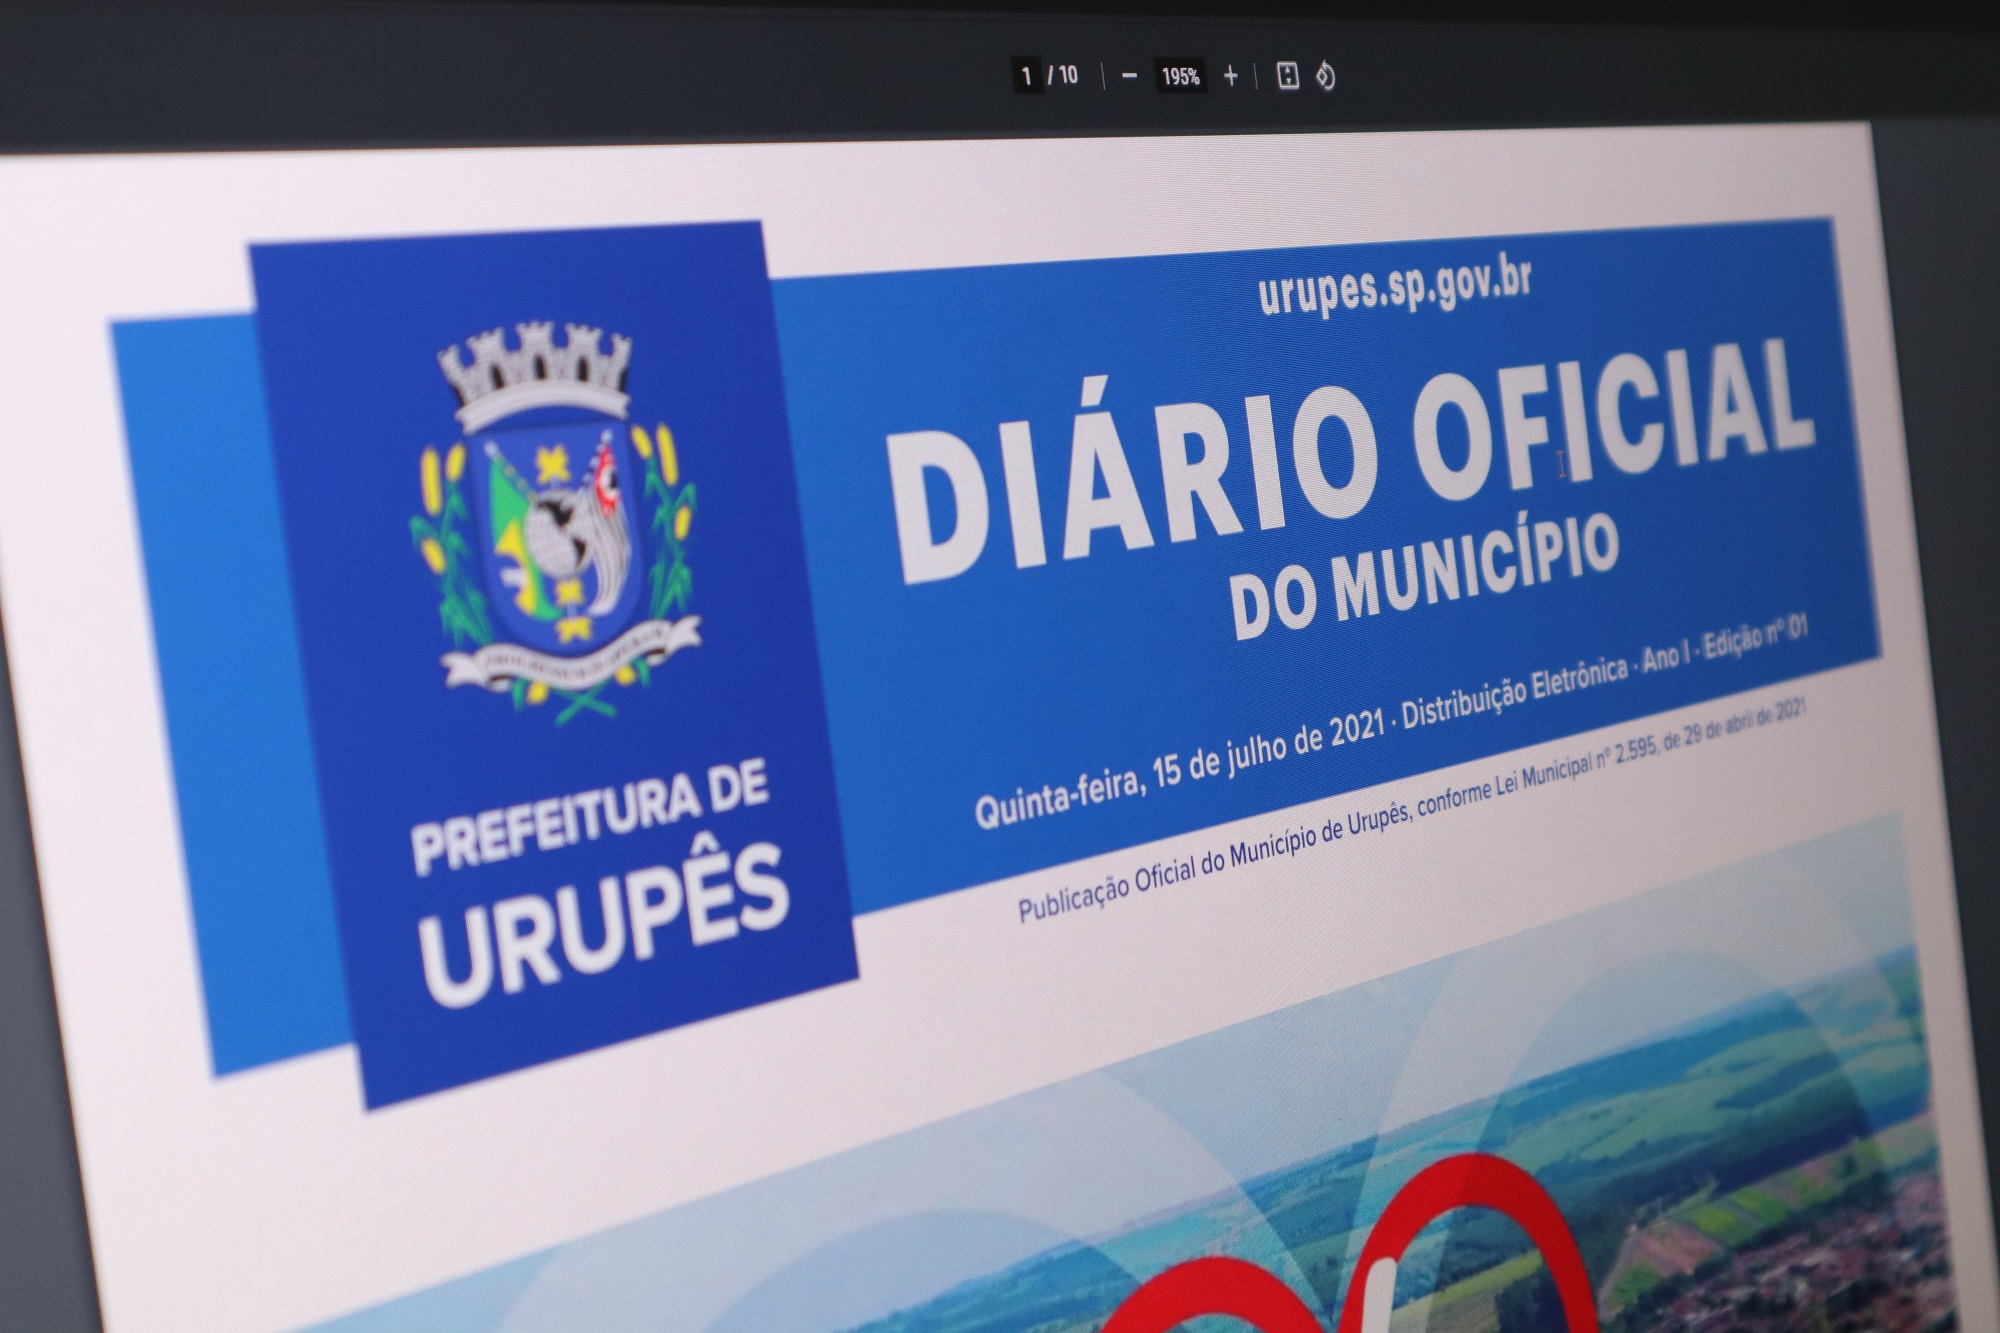 Diário Oficial Eletrônico está disponível para acesso de toda a população. Foto: Luís Fernando da Silva / Prefeitura Municipal de Urupês